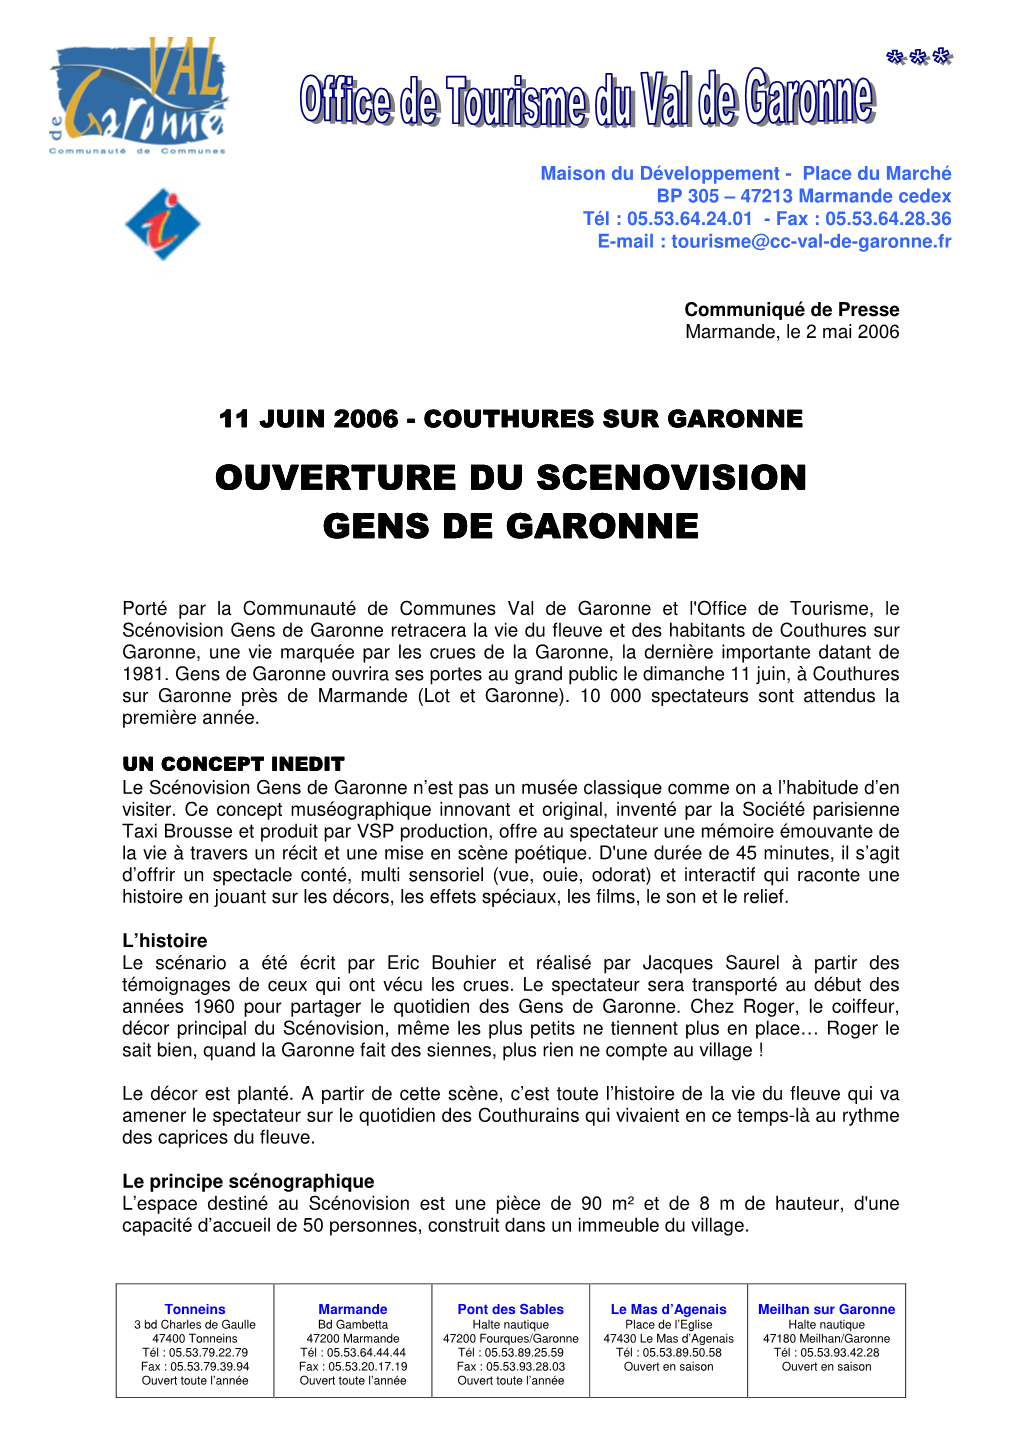 Ouverture Du Ouverture Du Scenovision Gens De Garonne Gens De Garonne